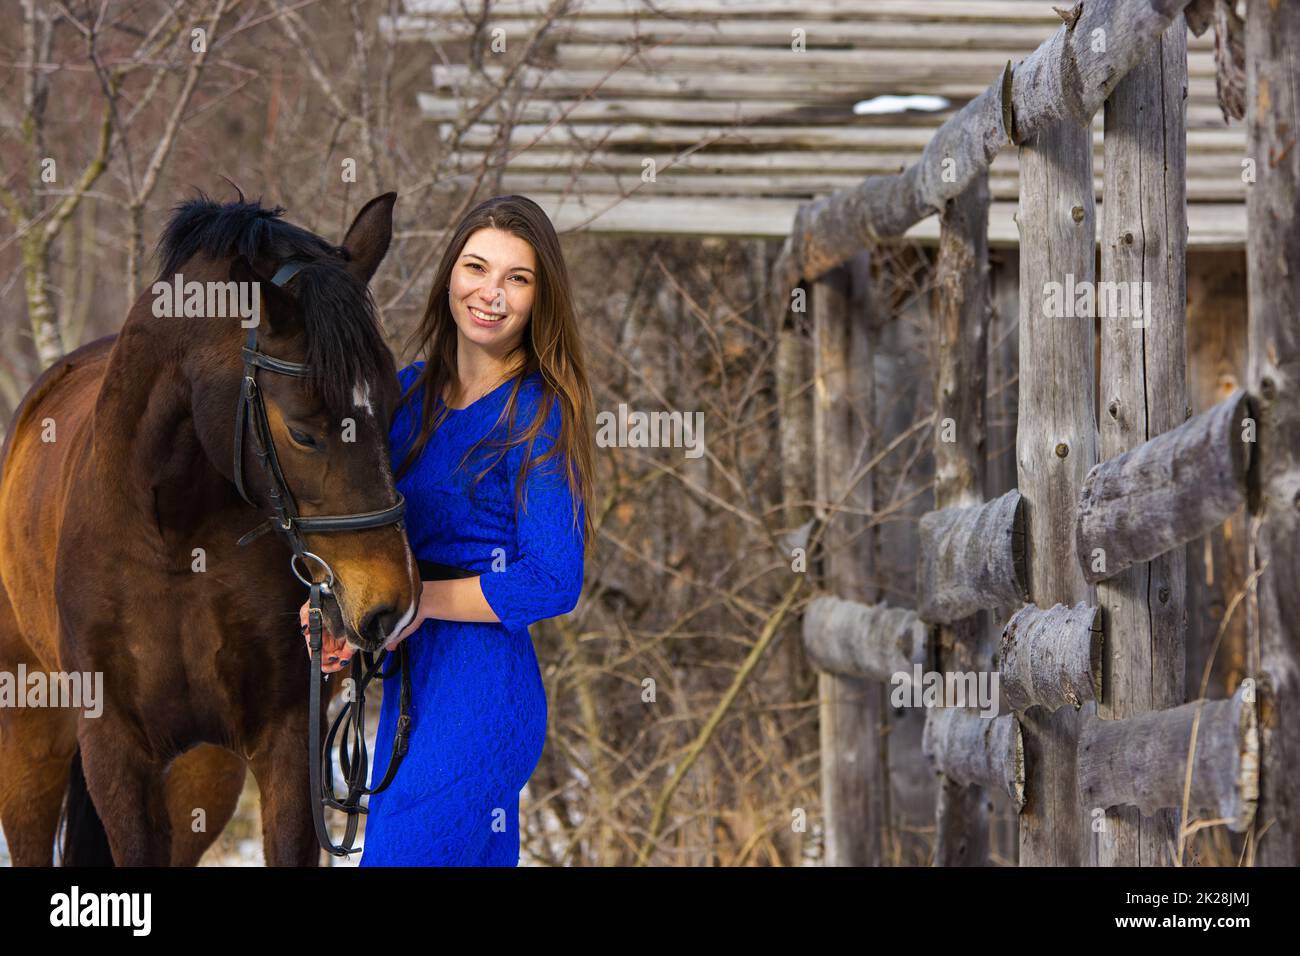 Ein schönes junges Mädchen in einem blauen Kleid umarmt ein Pferd vor dem Hintergrund eines alten Zauns und eines Winterwaldes Stockfoto